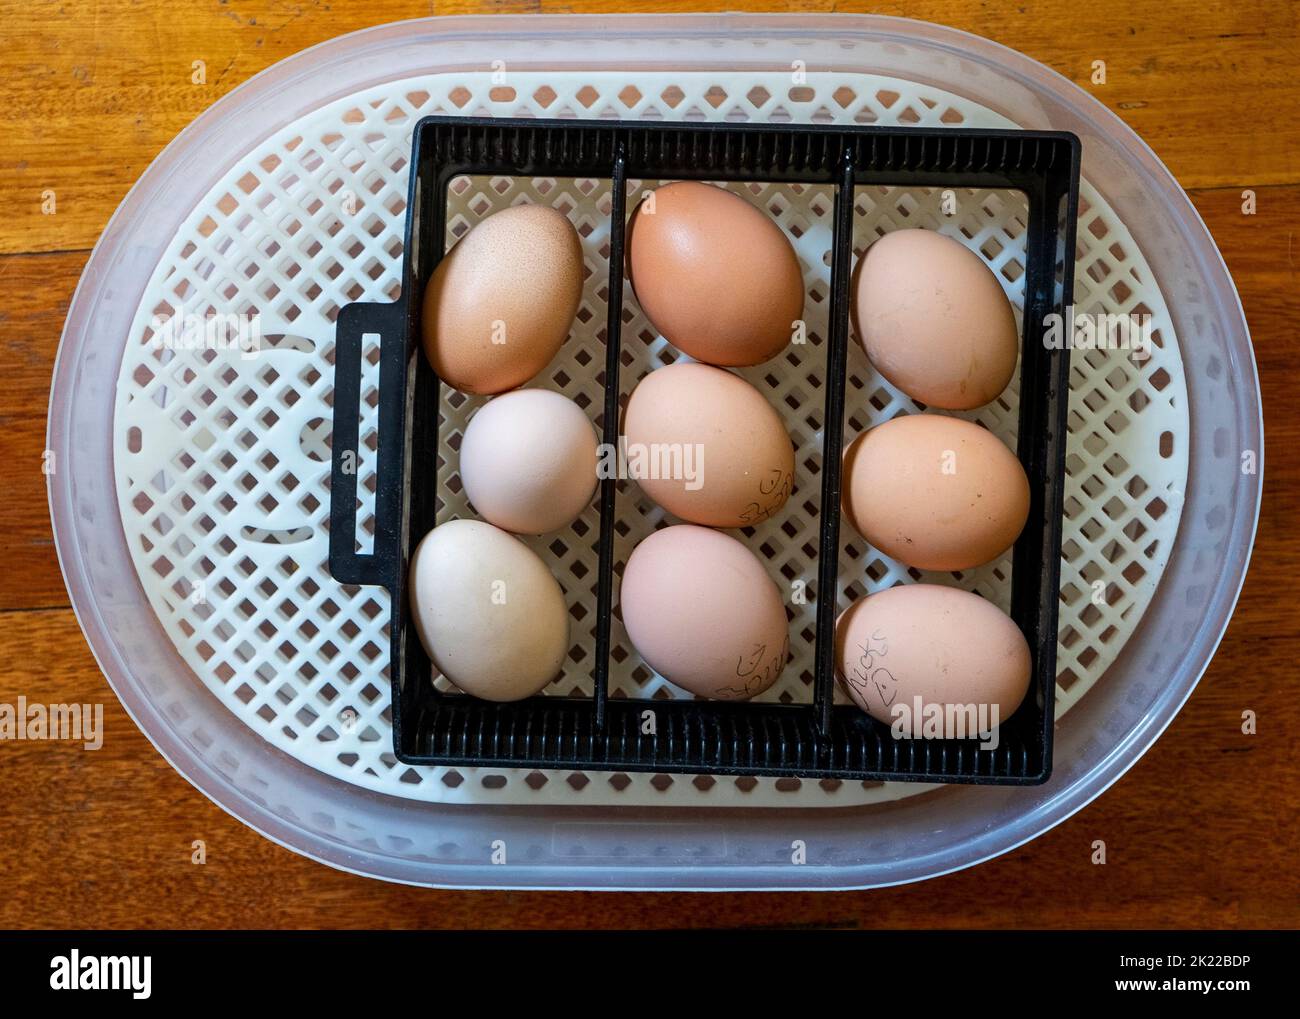 incubadora eléctrica de 220-240 voltios con control de temperatura y mecanismo de torneado automático de huevos que muestra la bandeja de torneado automático de huevos con 9 huevos Foto de stock